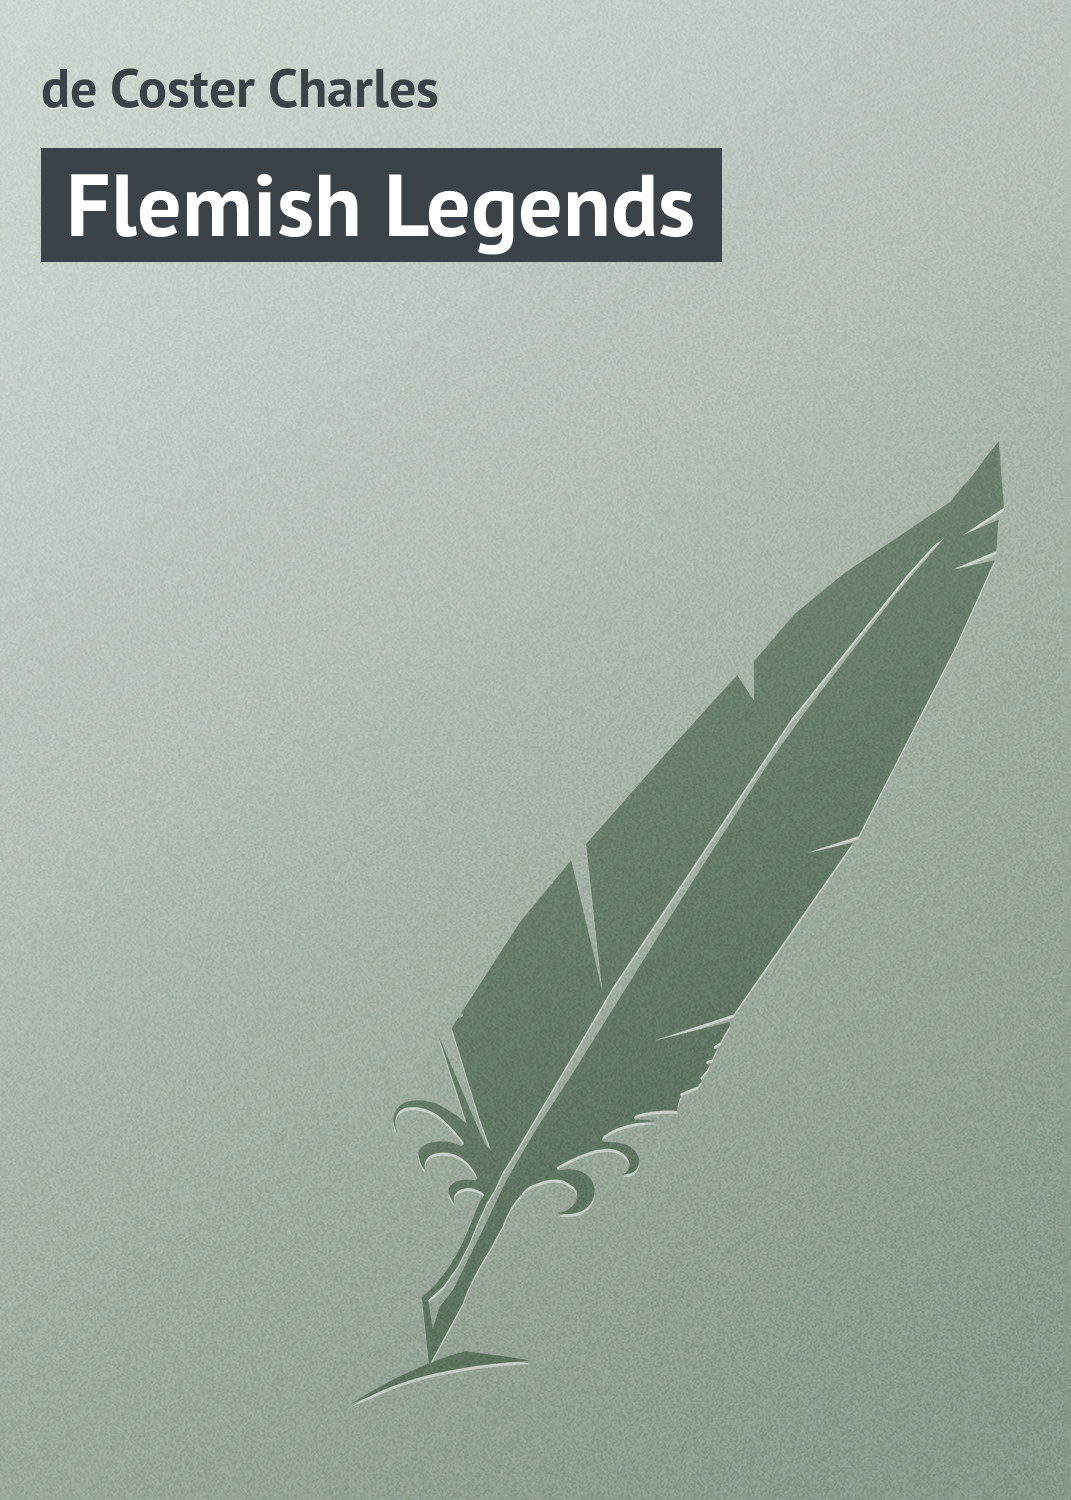 Книга Flemish Legends из серии , созданная Charles de Coster, может относится к жанру Зарубежная классика. Стоимость электронной книги Flemish Legends с идентификатором 23160259 составляет 5.99 руб.